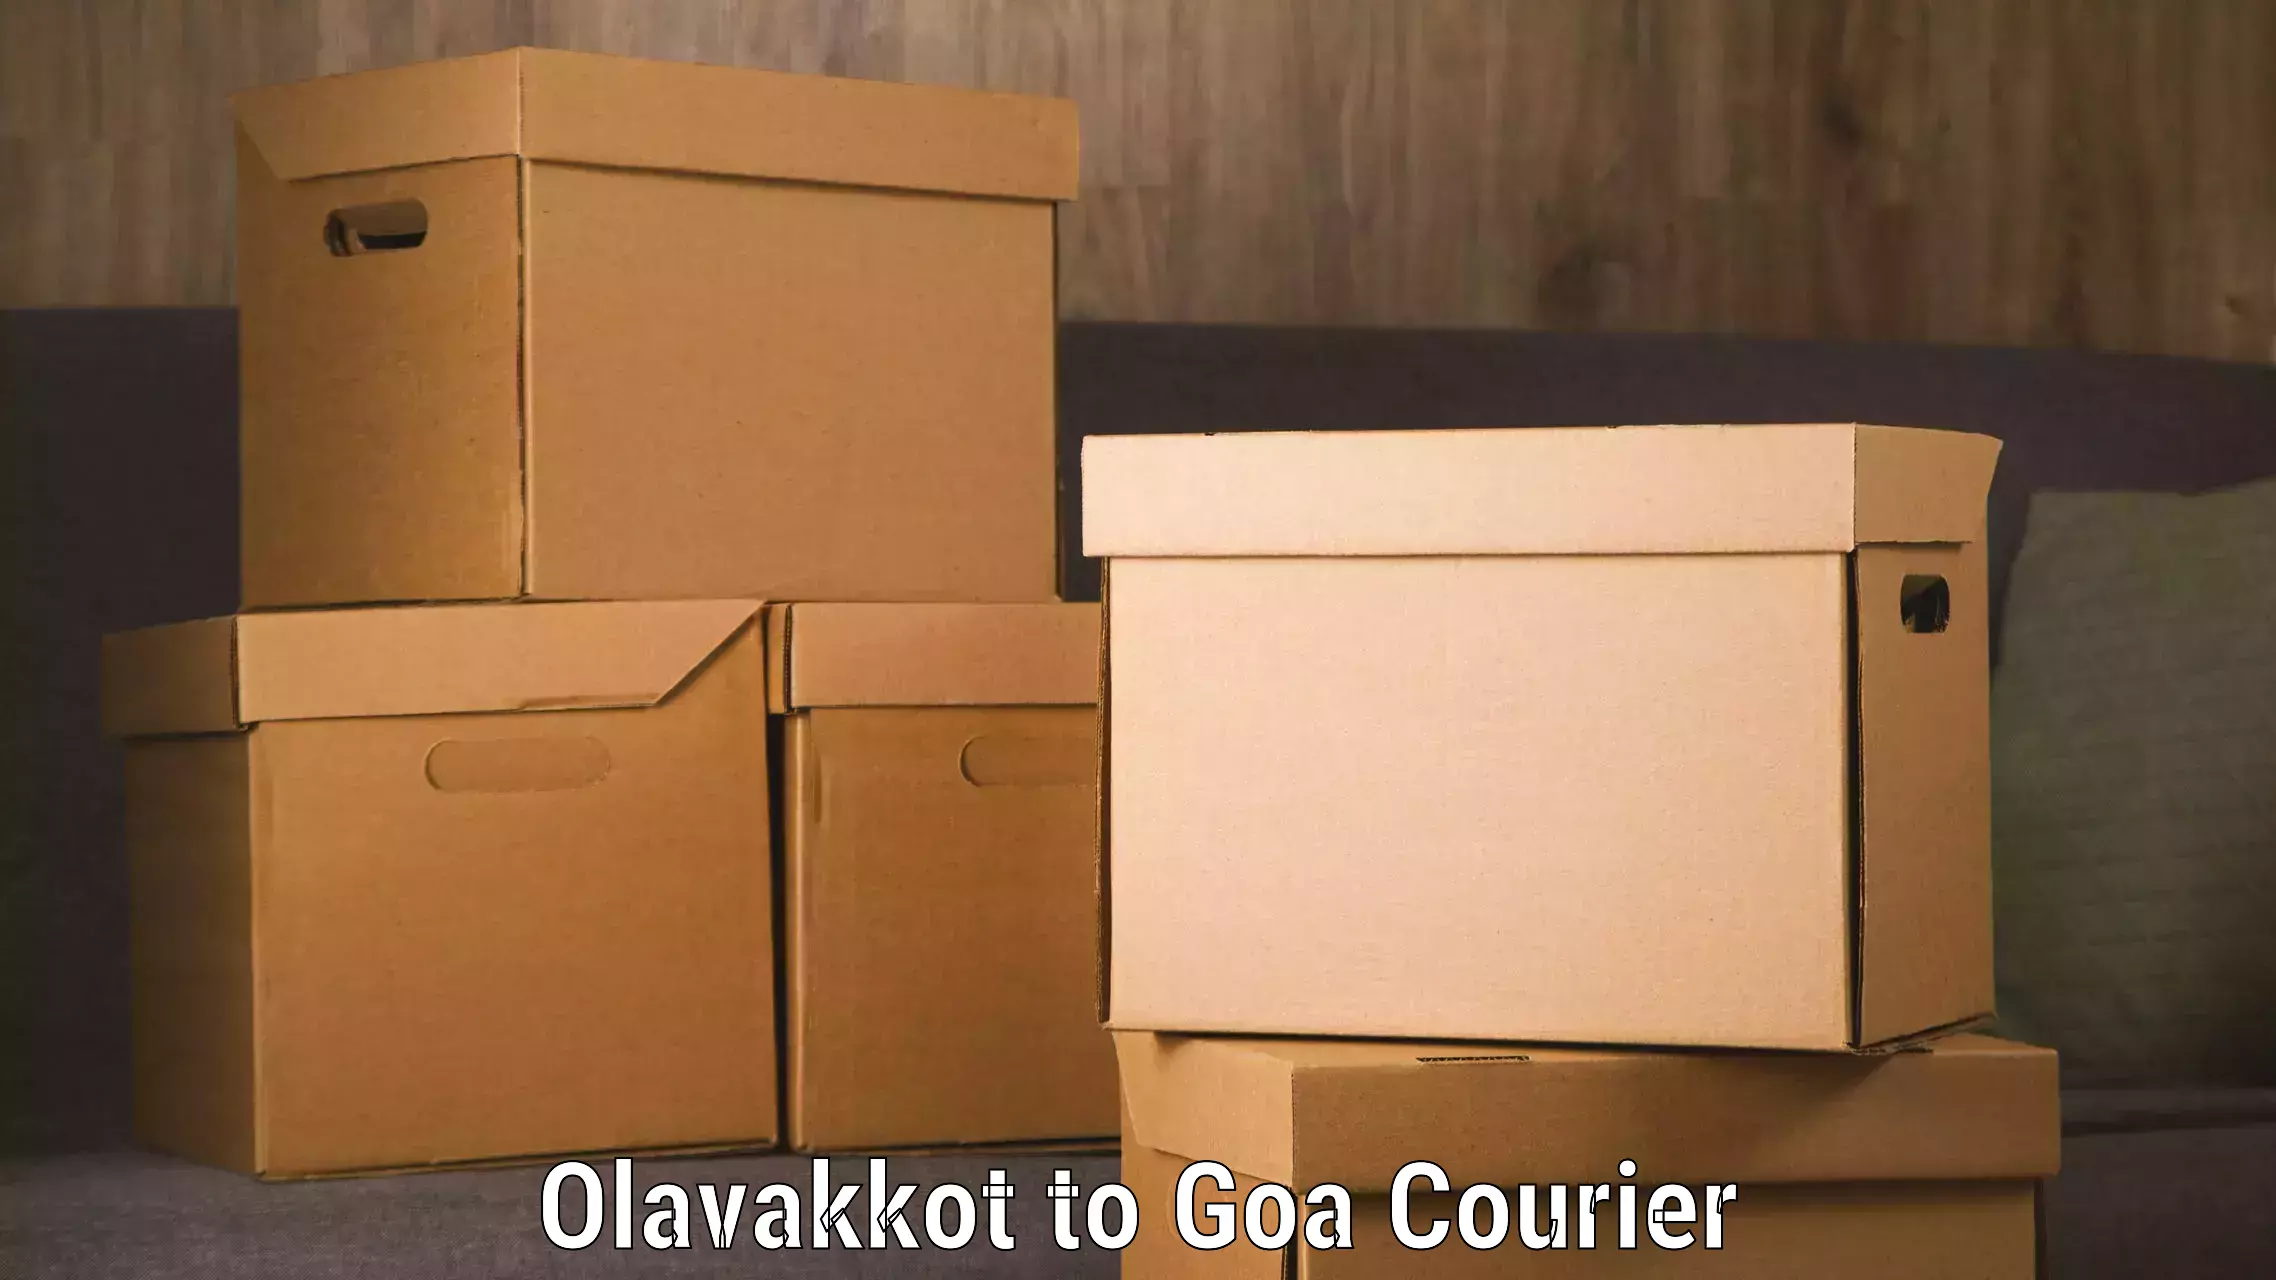 Professional parcel services Olavakkot to Goa